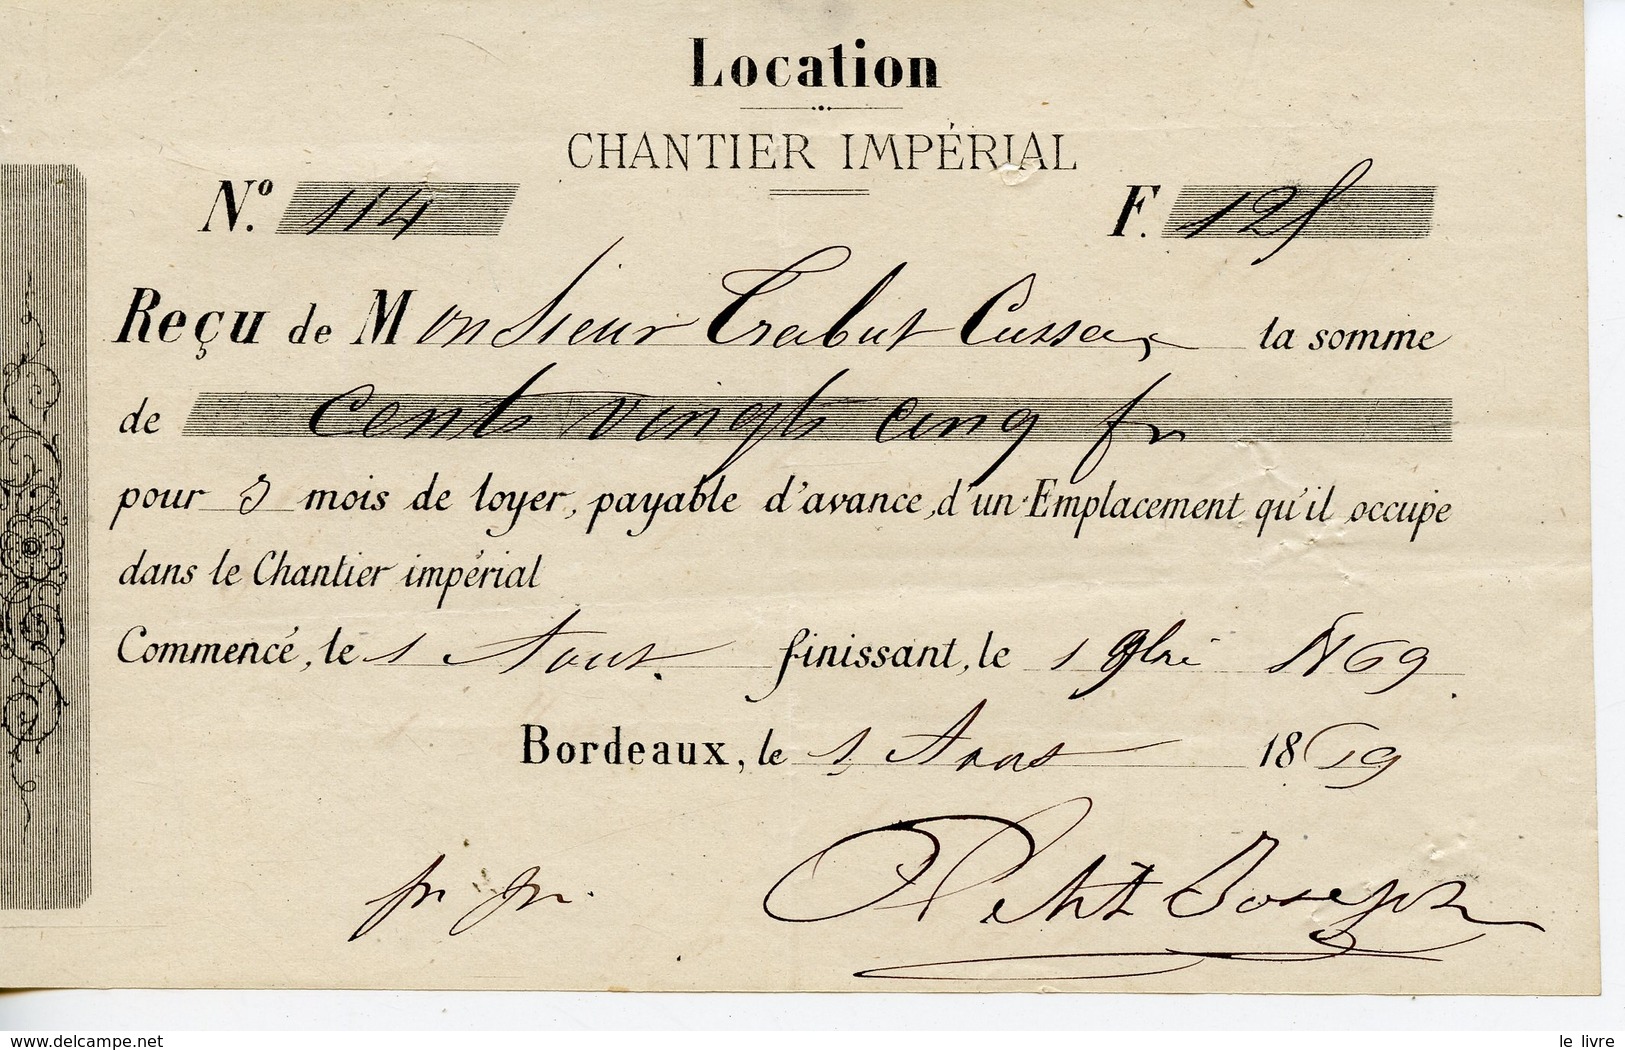 QUITTANCE DE LOYER LOCATION DANS LE CHANTIER IMPERIAL 1869 by France:  (1869) Manuscript / Paper Collectible